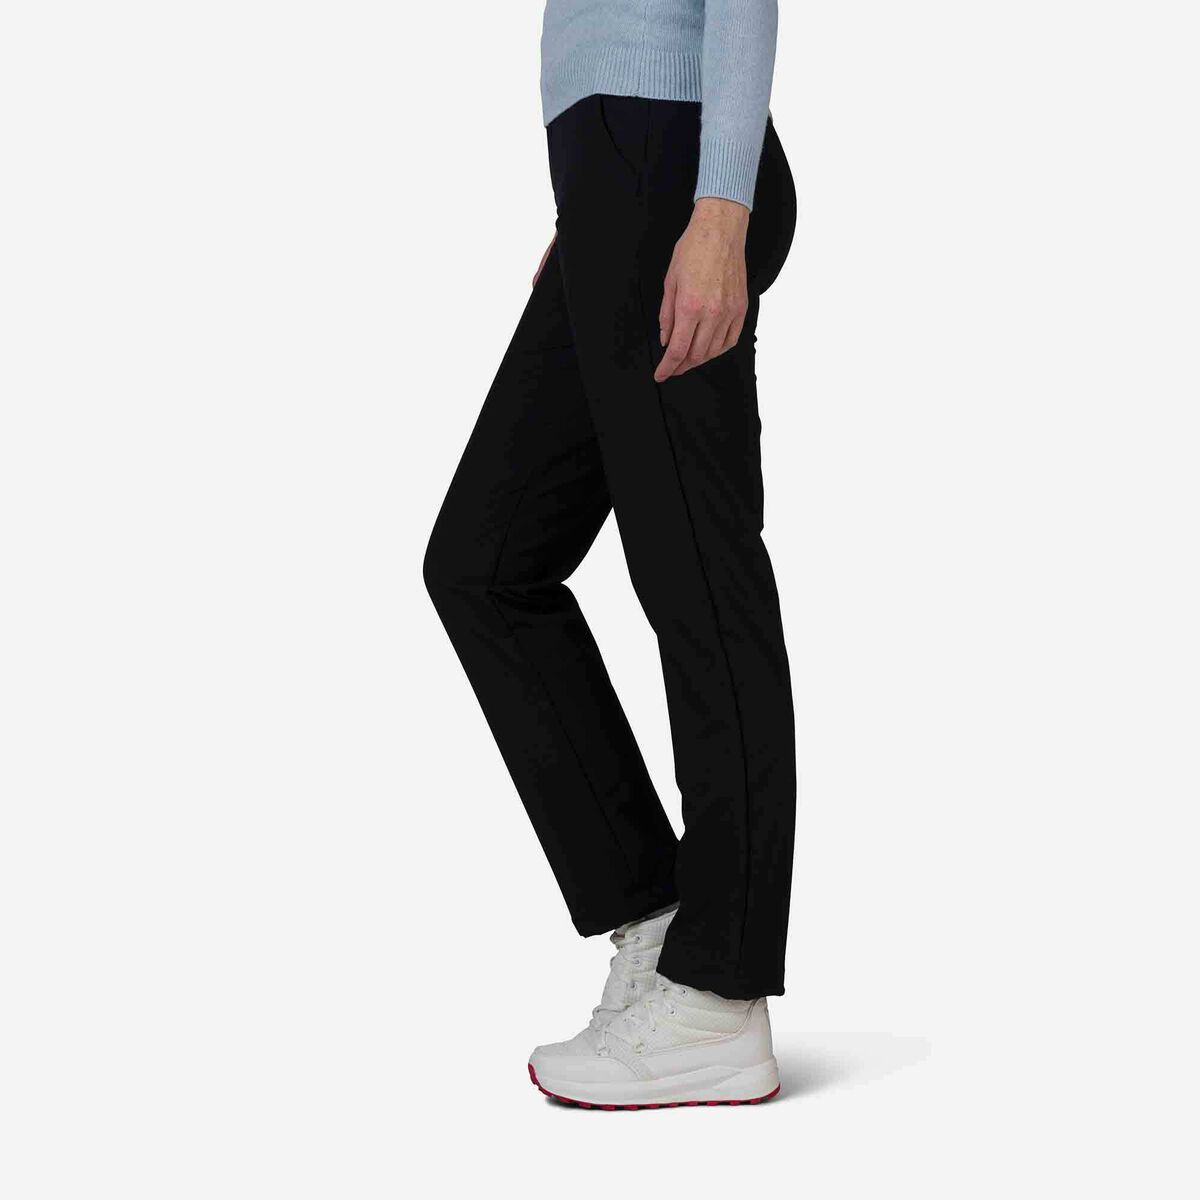 Pantalon Tech stretch Femme